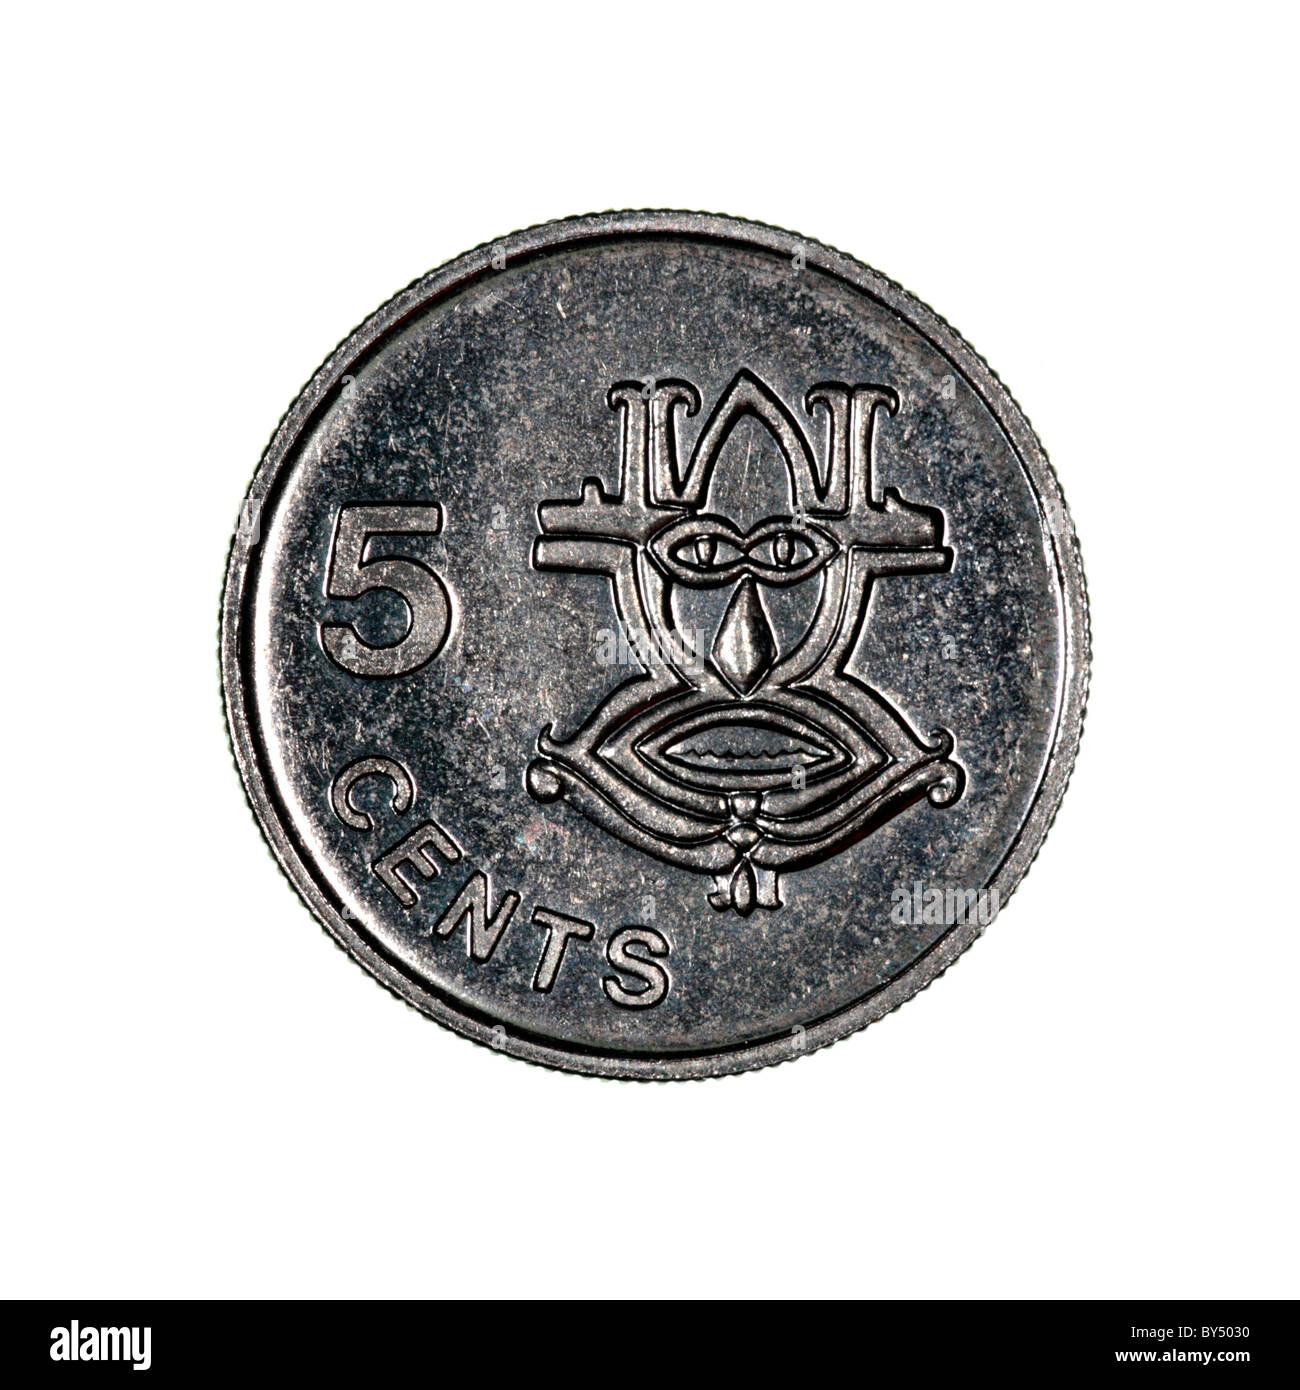 Monnaie des Îles Salomon Photo Stock - Alamy